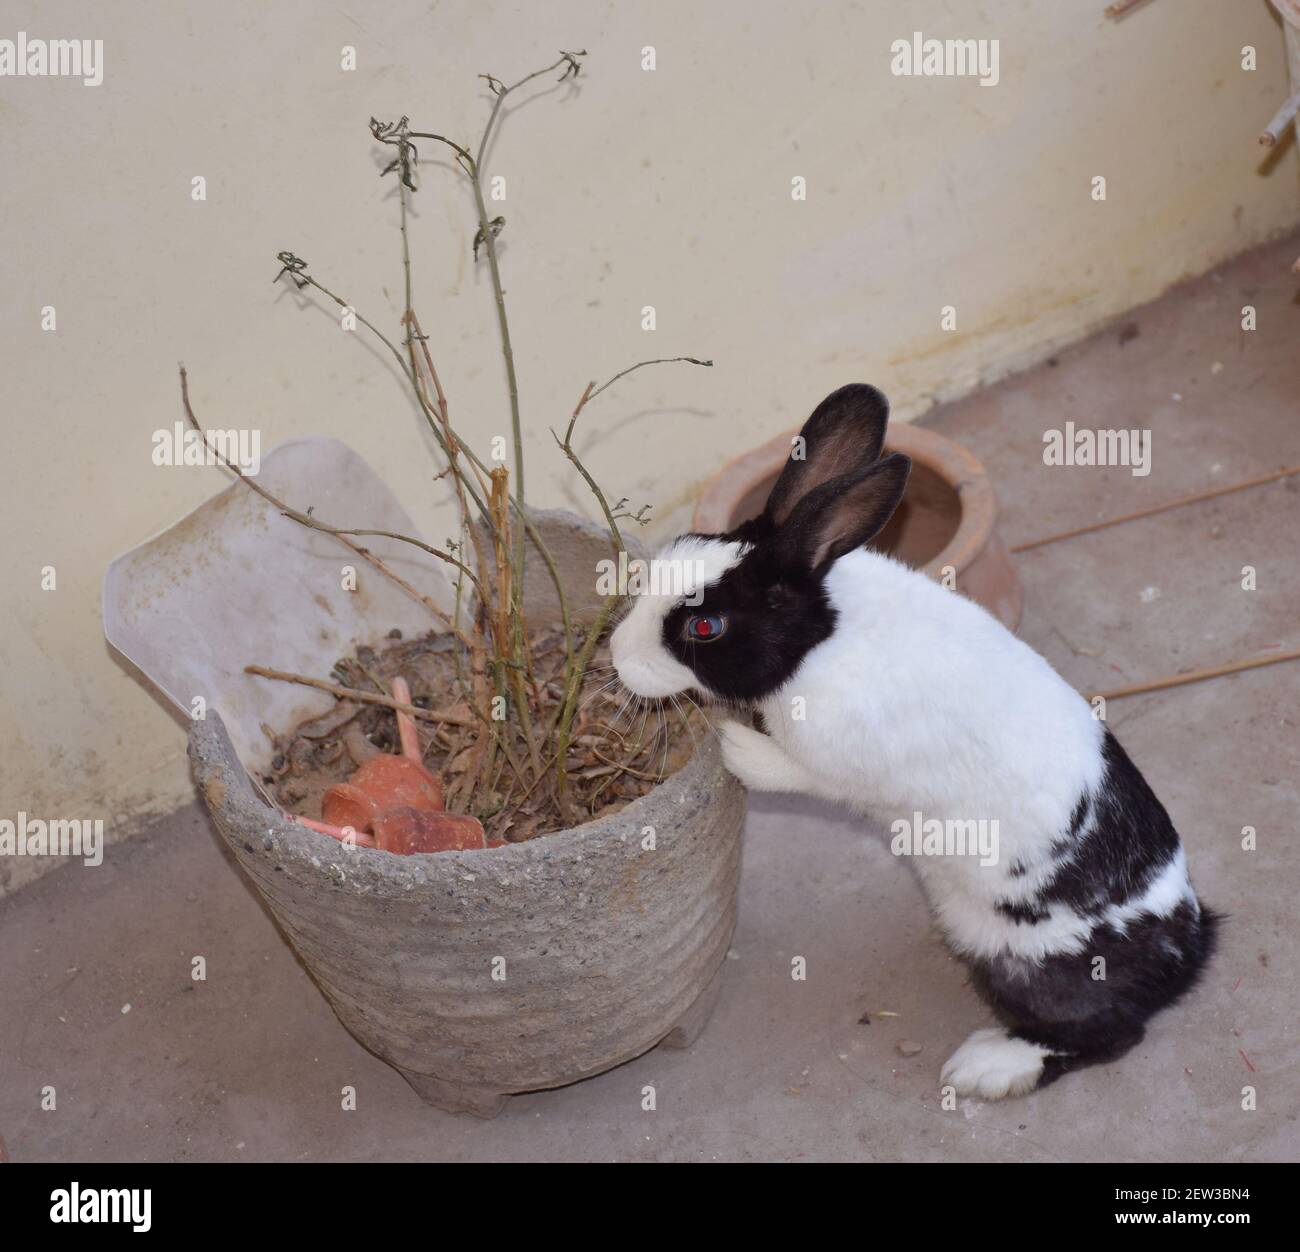 Un coniglio o coniglietto che cerca qualcosa mentre si appoggia su un pentola Foto Stock